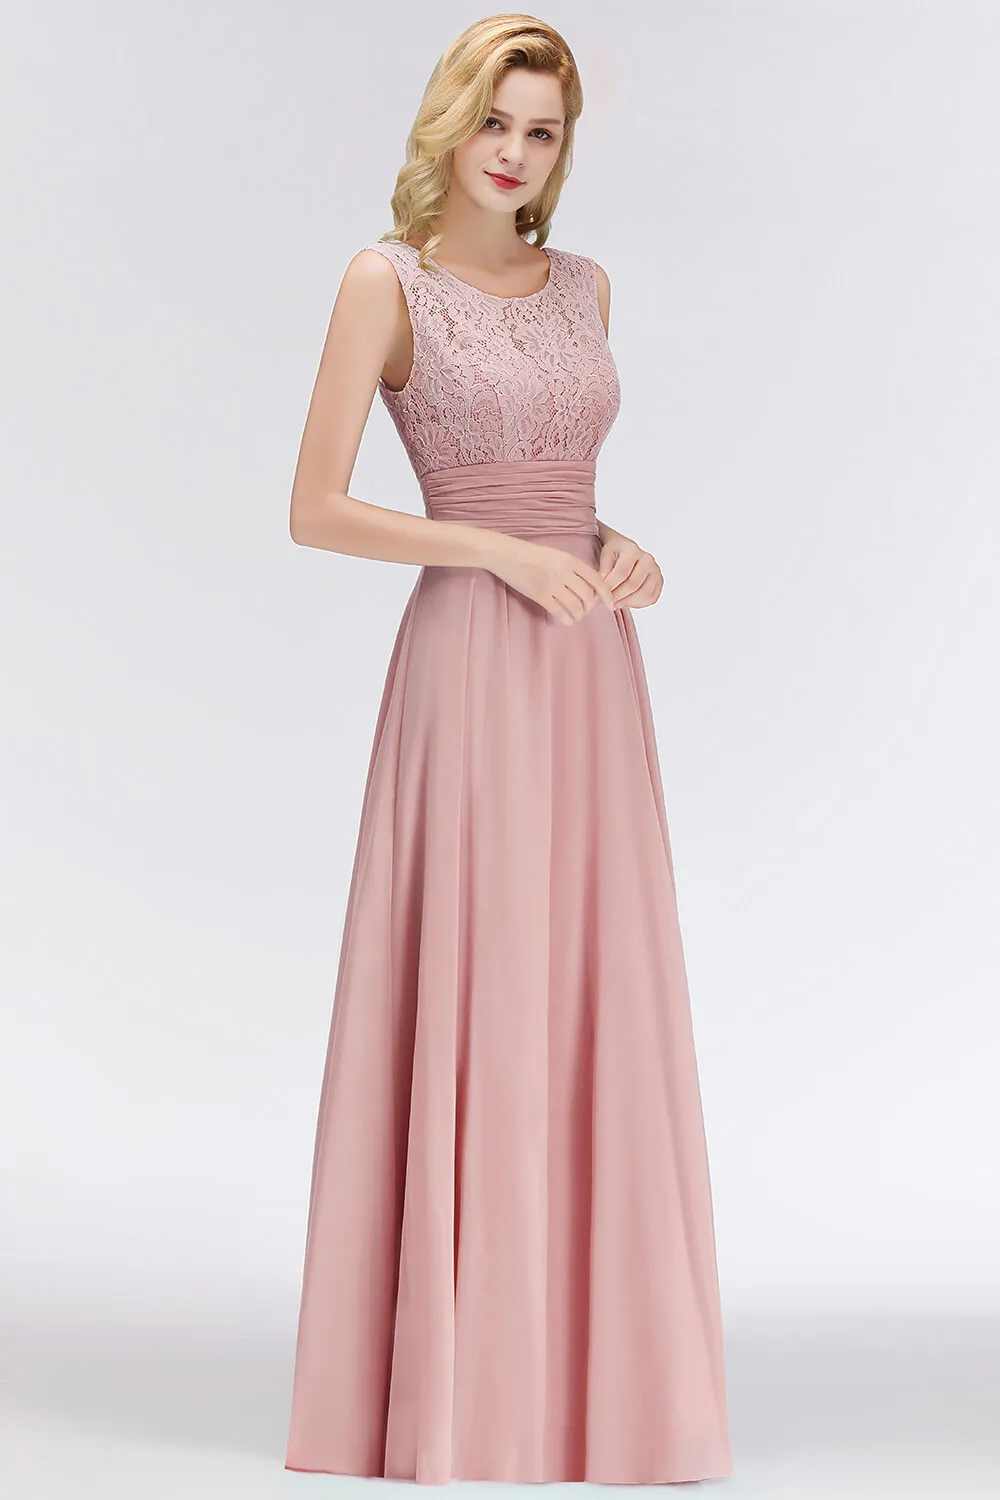 Dusty Rose розовое кружево длинное вечернее платье шифоновая одежда де ОБУРЕЕ ОБРАЗОВАТЕЛЬНЫЕ ДЕЛАНИЕ